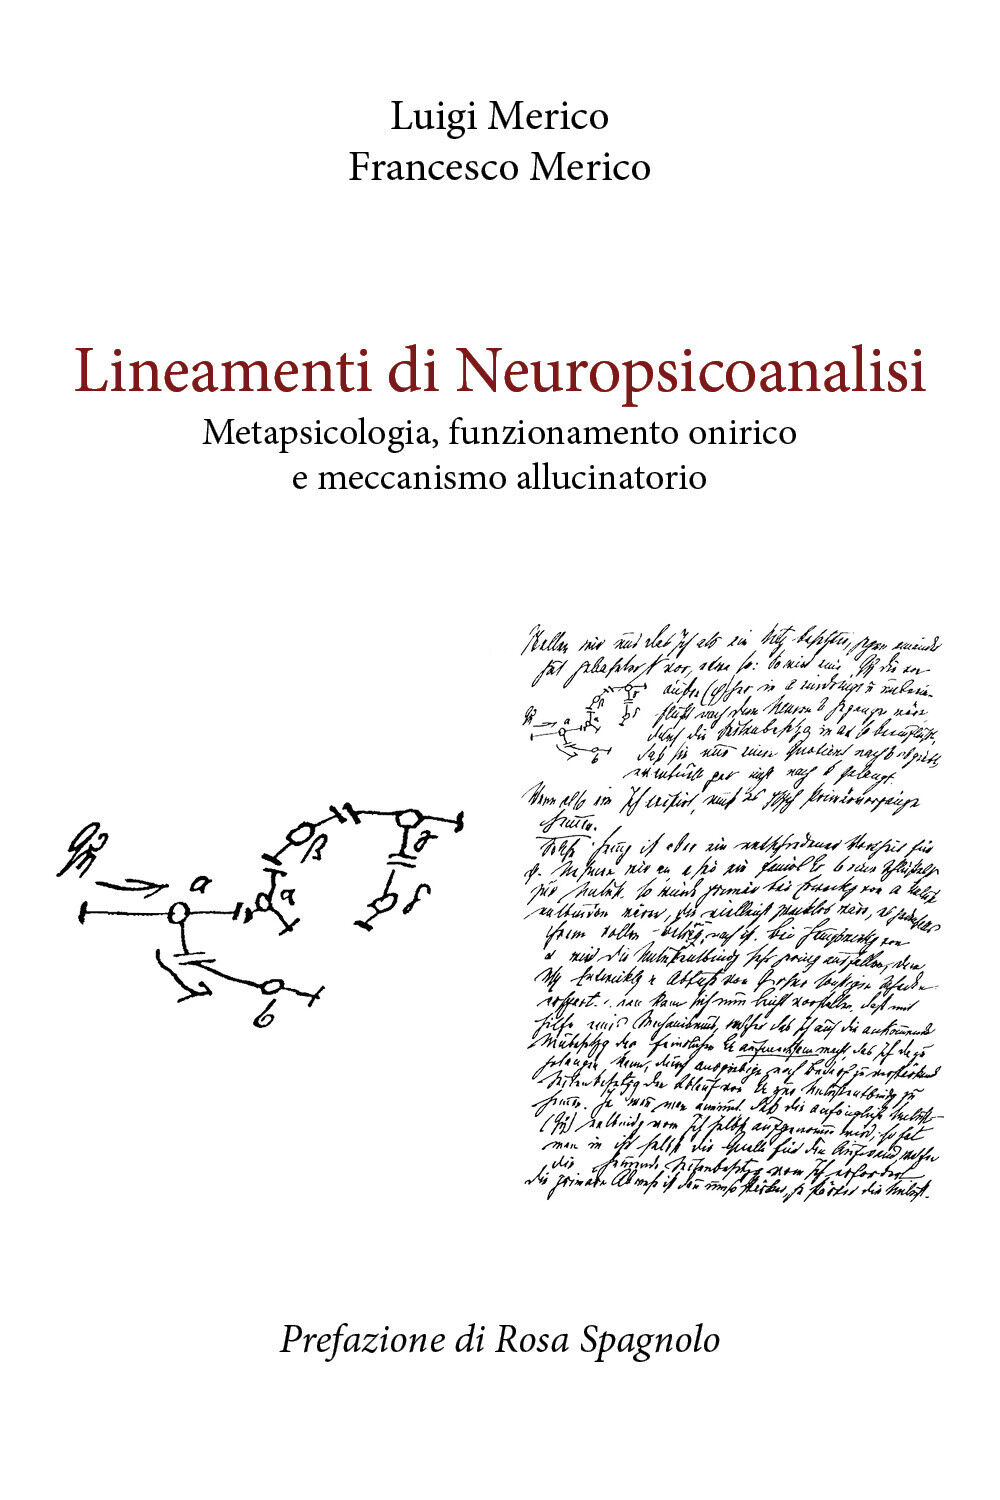 Lineamenti di Neuropsicoanalisi di Luigi Merico, Francesco Merico,  2021,  Youca